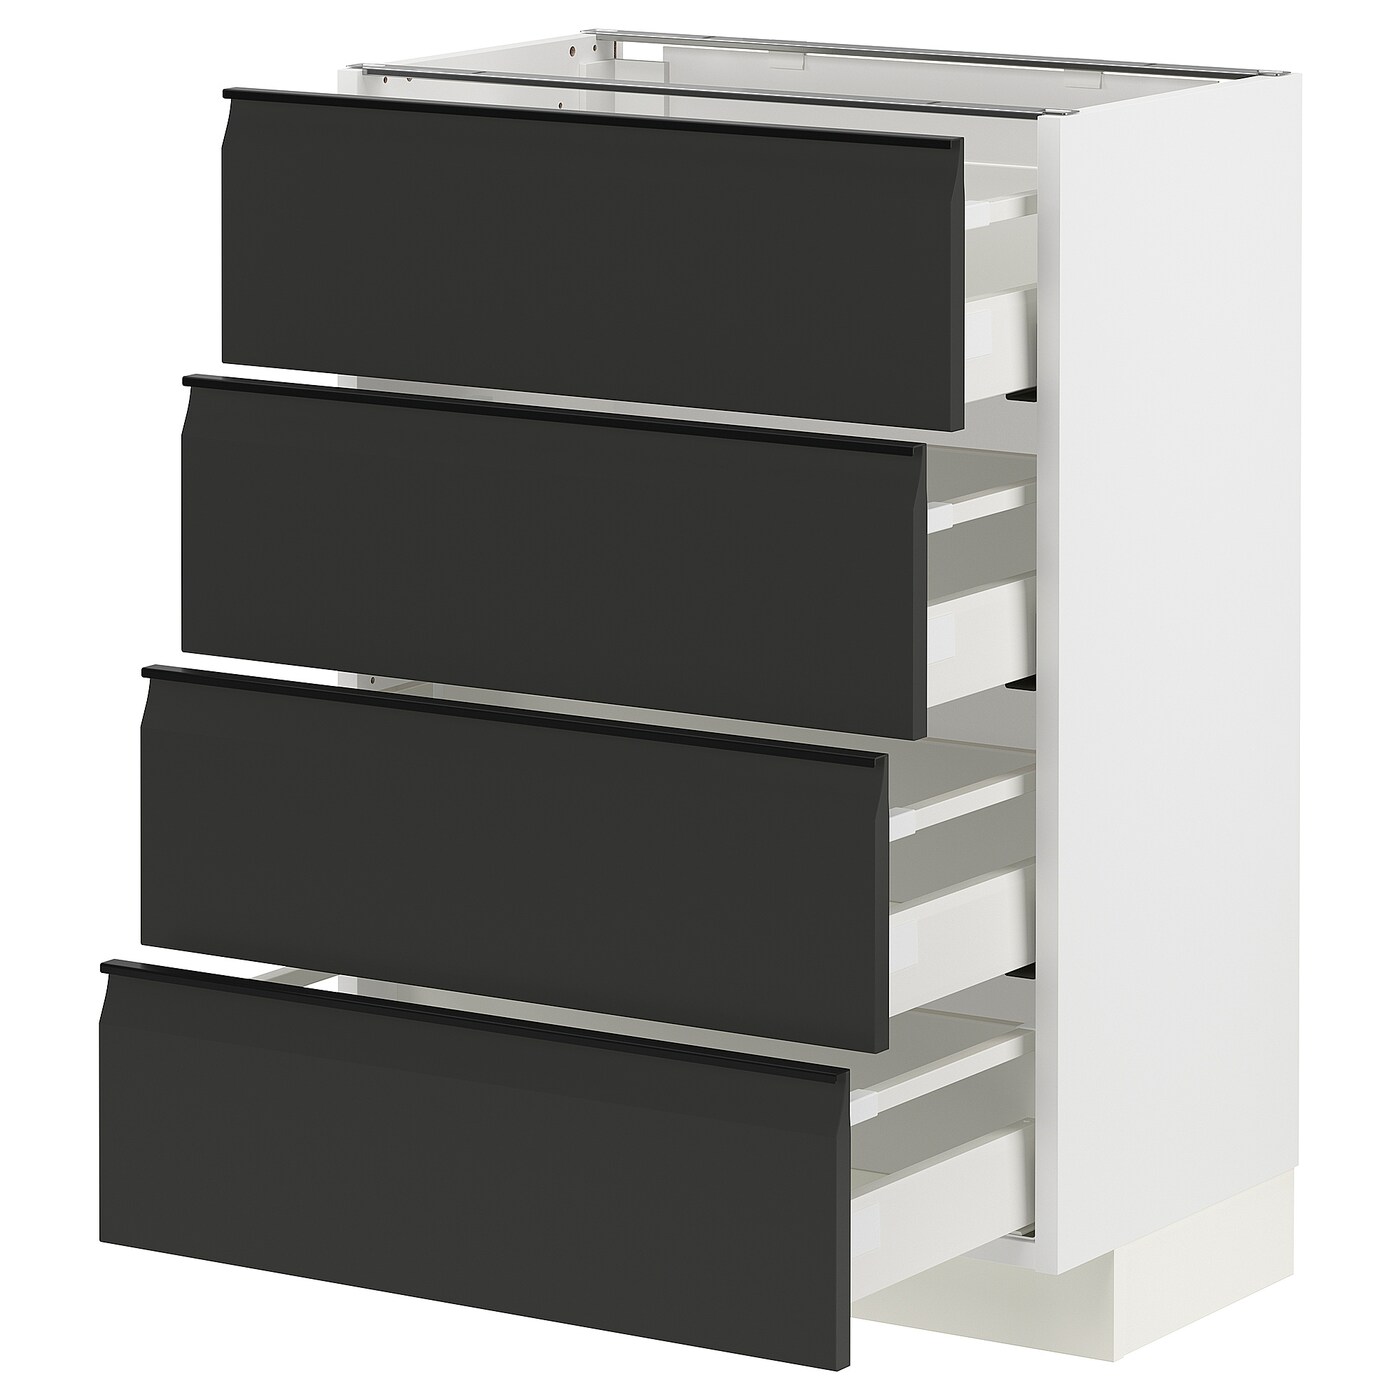 Напольный кухонный шкаф  - IKEA METOD MAXIMERA, 88x39,2x60см, белый/черный, МЕТОД МАКСИМЕРА ИКЕА